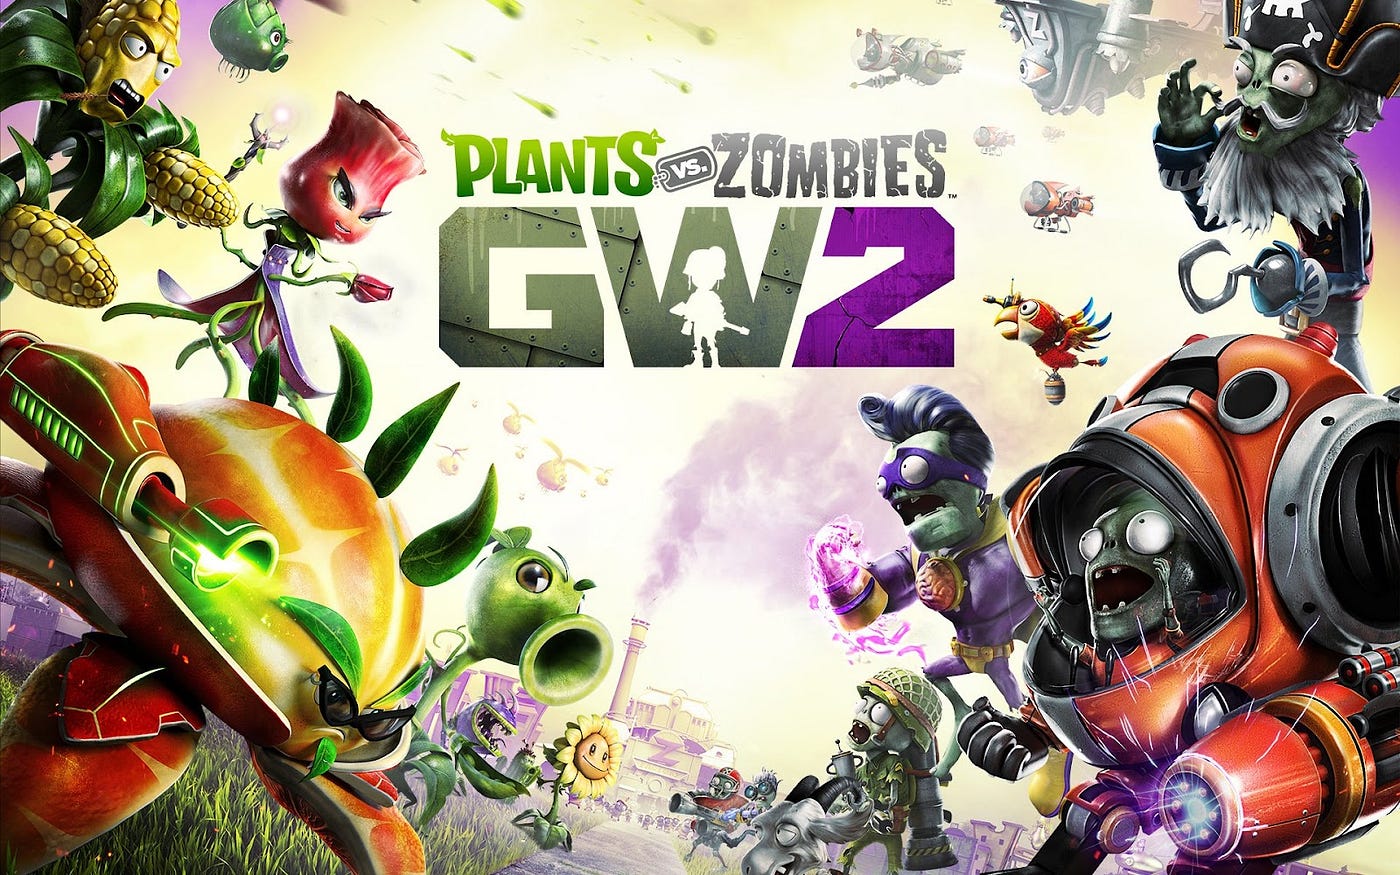 Plants vs Zombies: Garden Warfare 2: Complete Class Unlock Guide